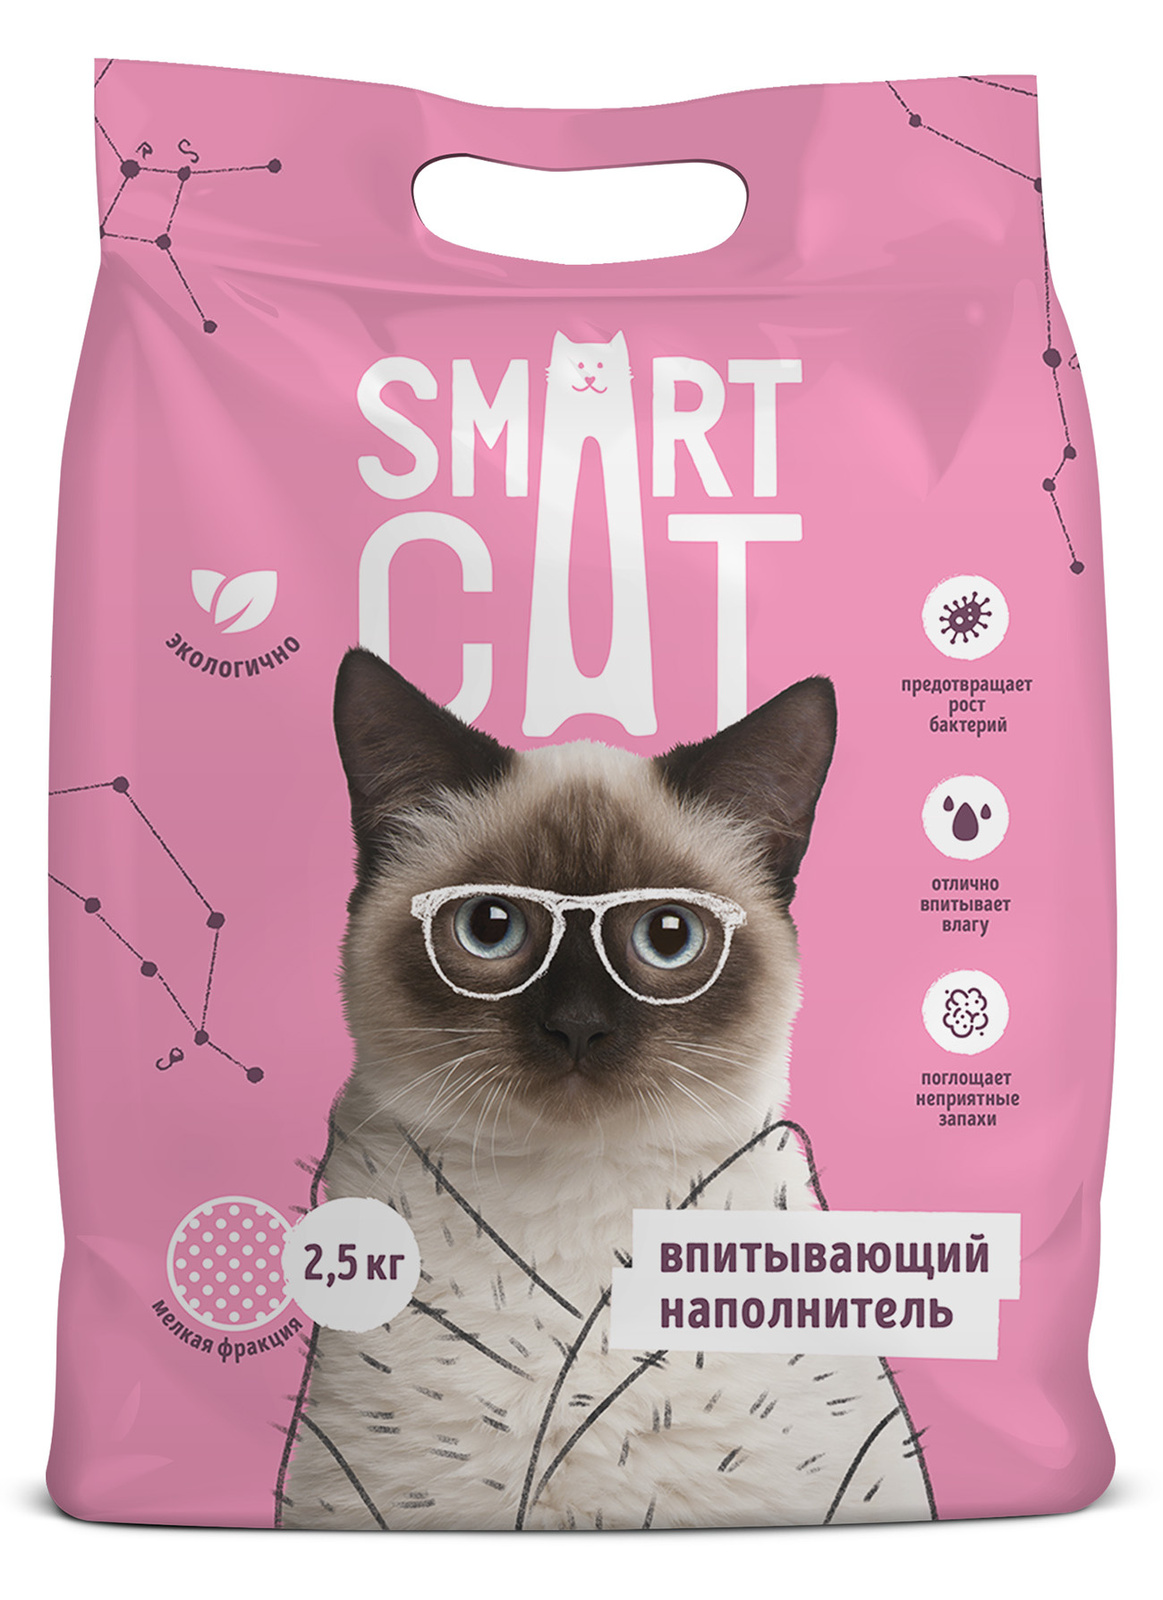 Smart Cat наполнитель Smart Cat наполнитель впитывающий наполнитель, мелкая фракция (5 кг) smart cat наполнитель smart cat наполнитель впитывающий наполнитель средняя фракция 5 кг